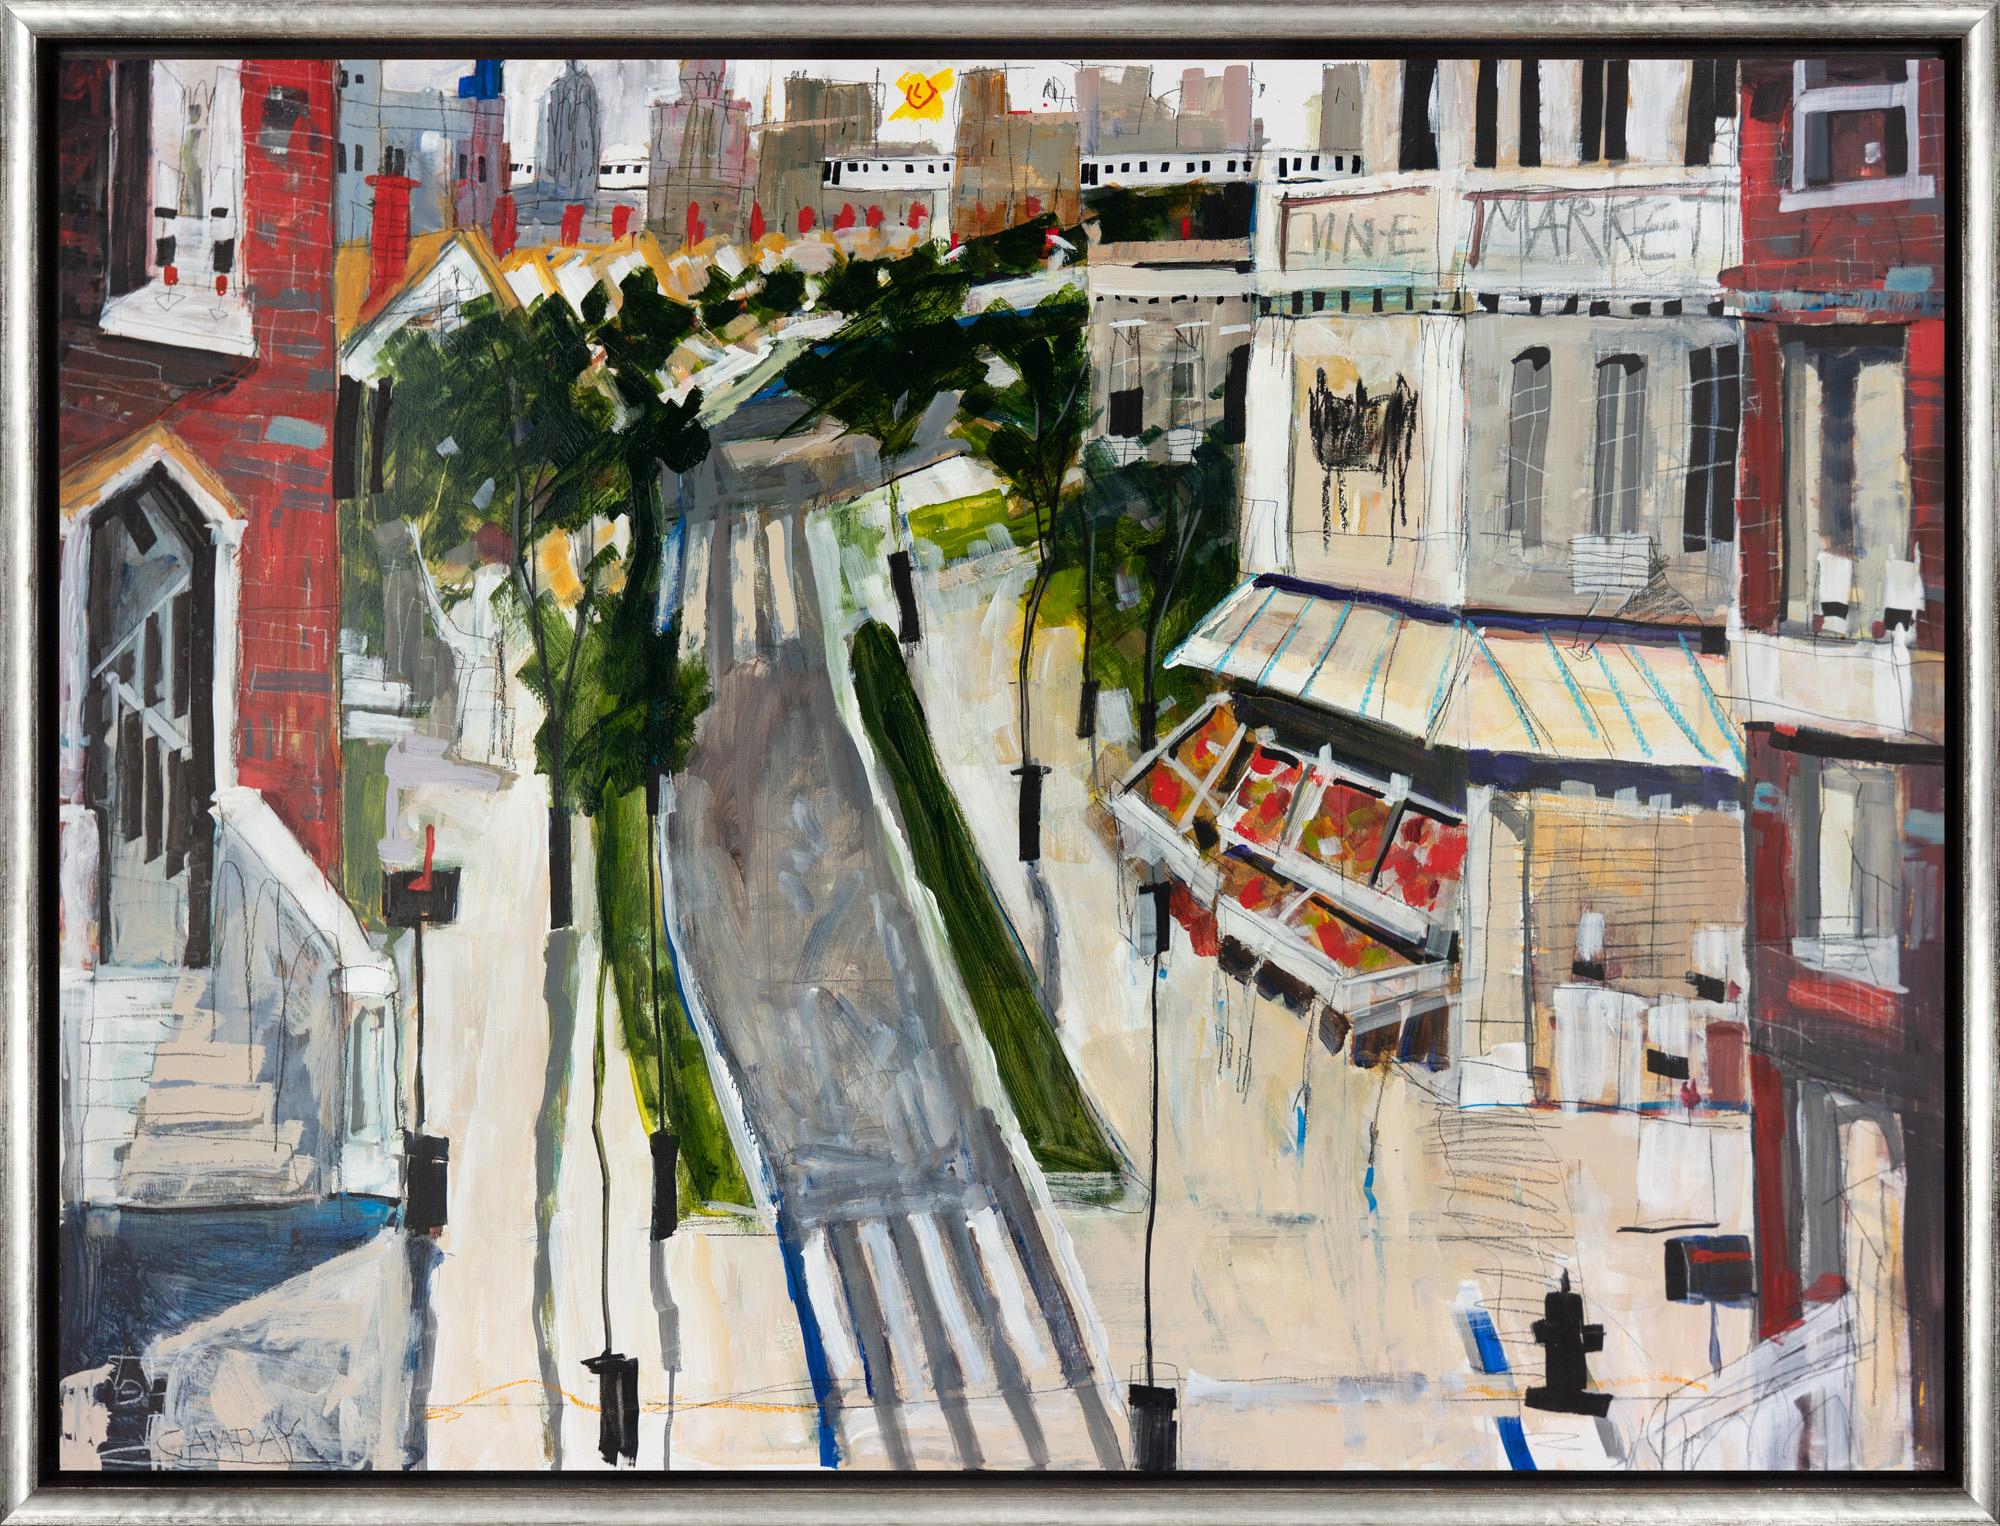 Landscape Painting Dennis Campay - "The Neighborhood" Peinture contemporaine de paysage urbain en techniques mixtes sur panneau encadré